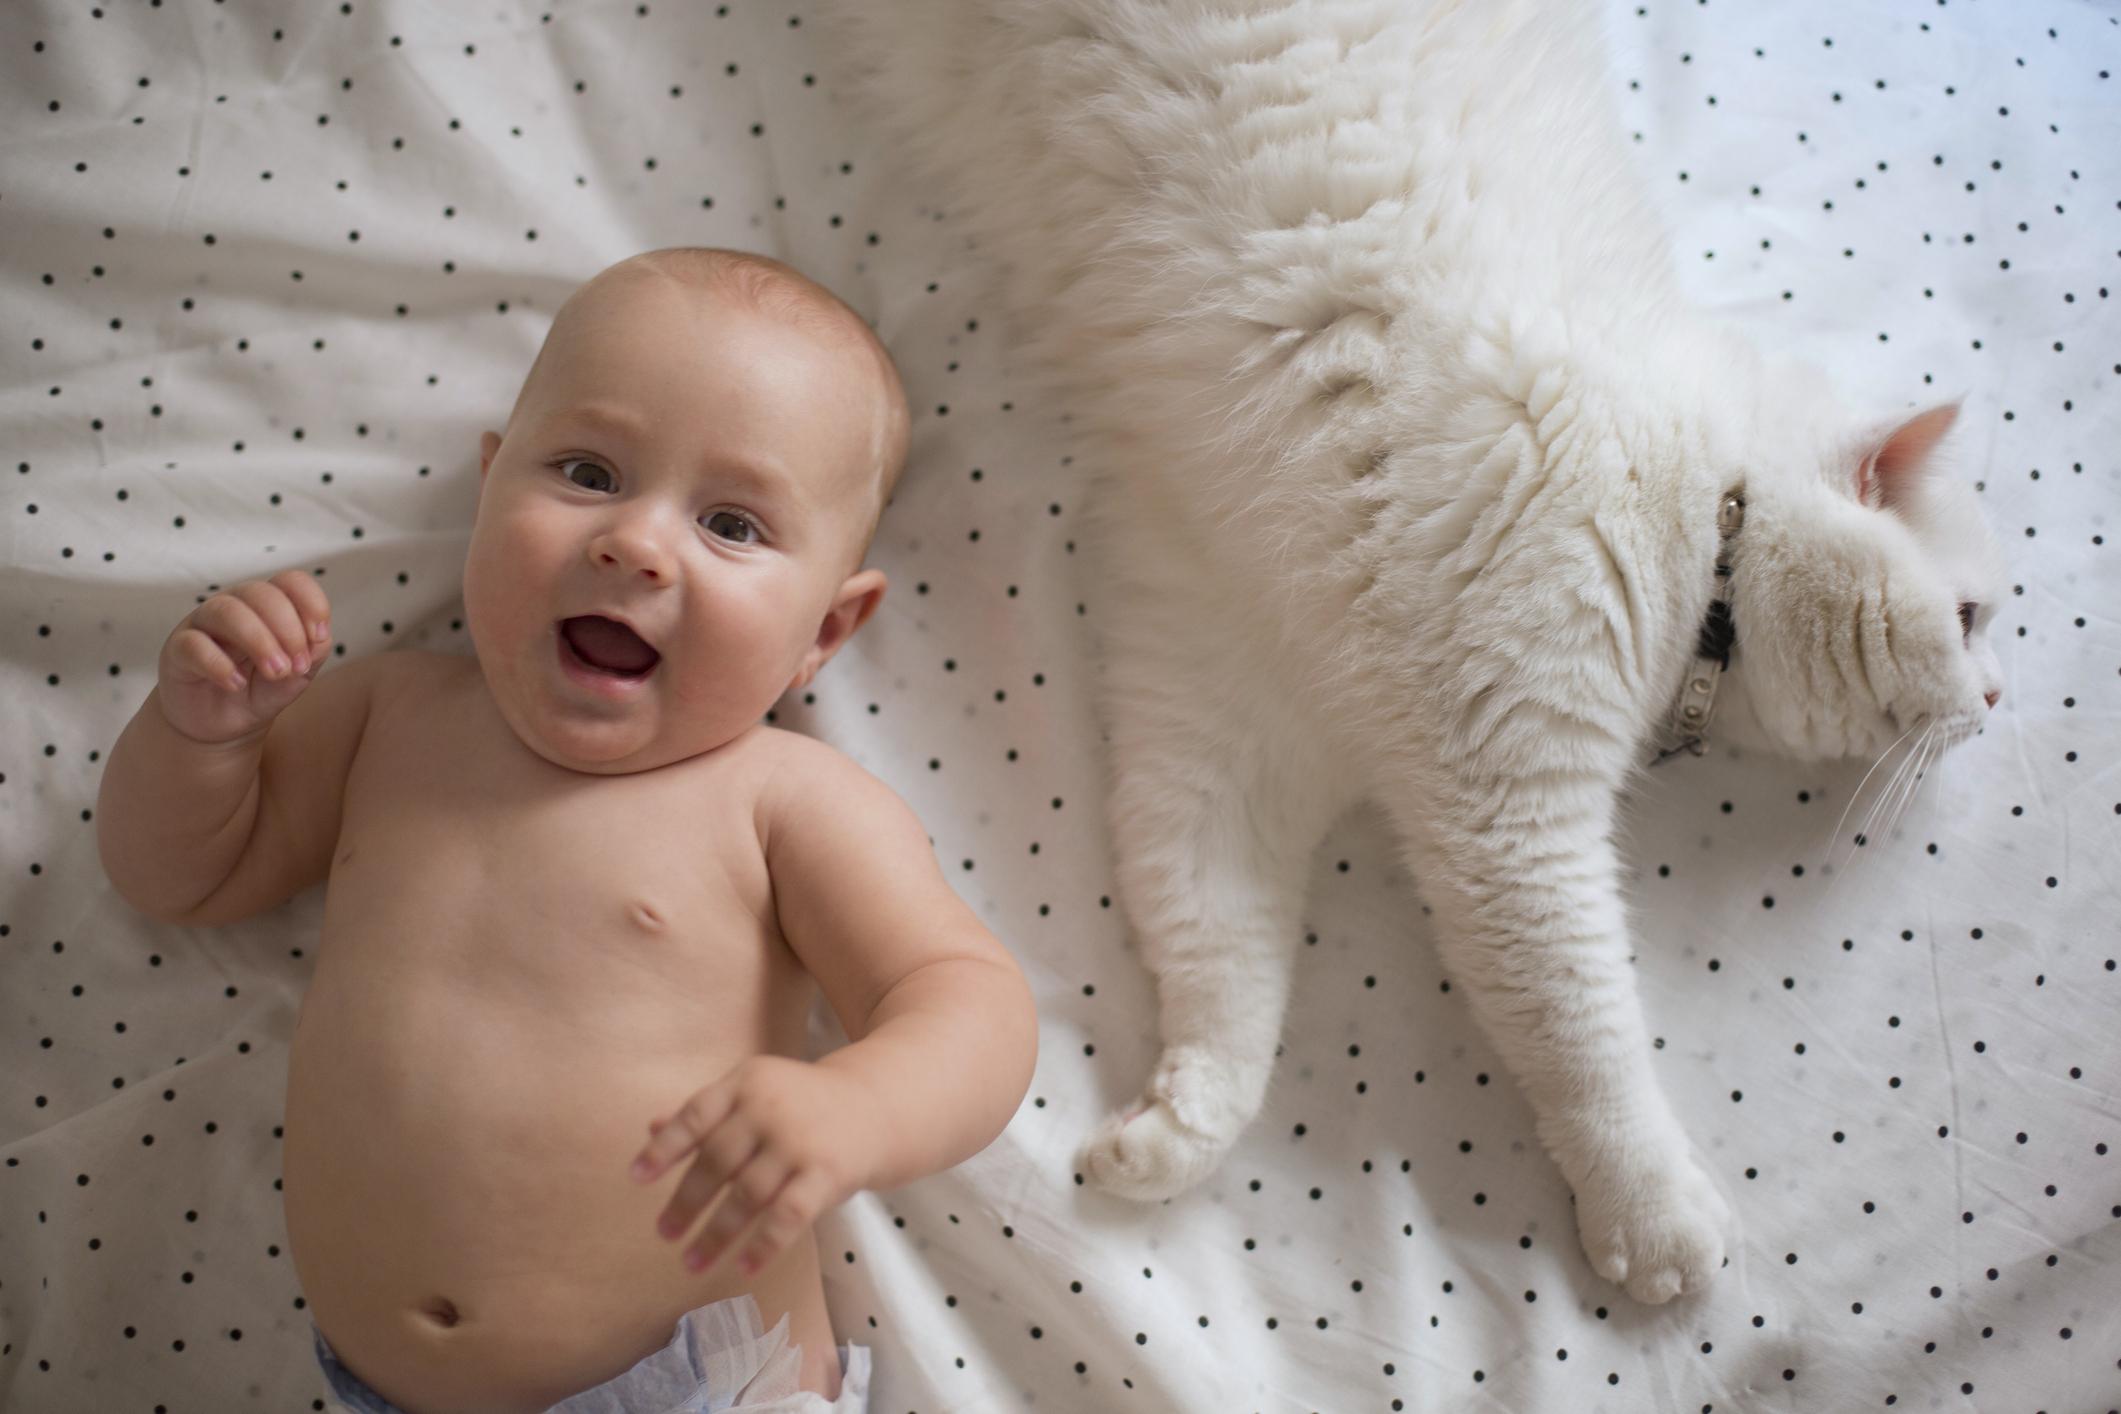 Moedig aan Intrekking Nieuwe aankomst 5x fabels over katten en baby's ontkracht - Libelle Mama